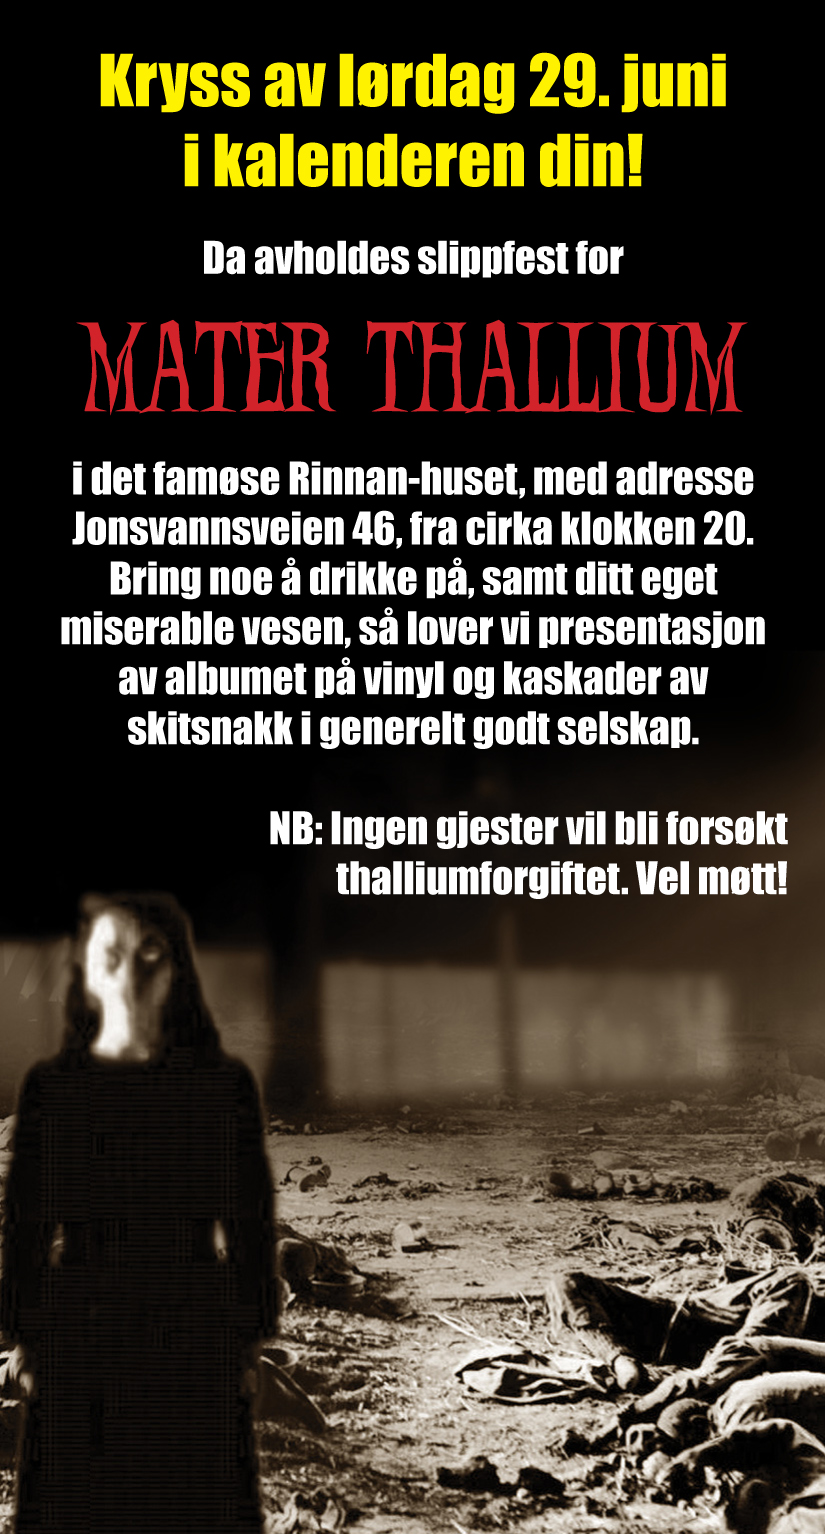 MATER THALLIUM slippfest (29/6)